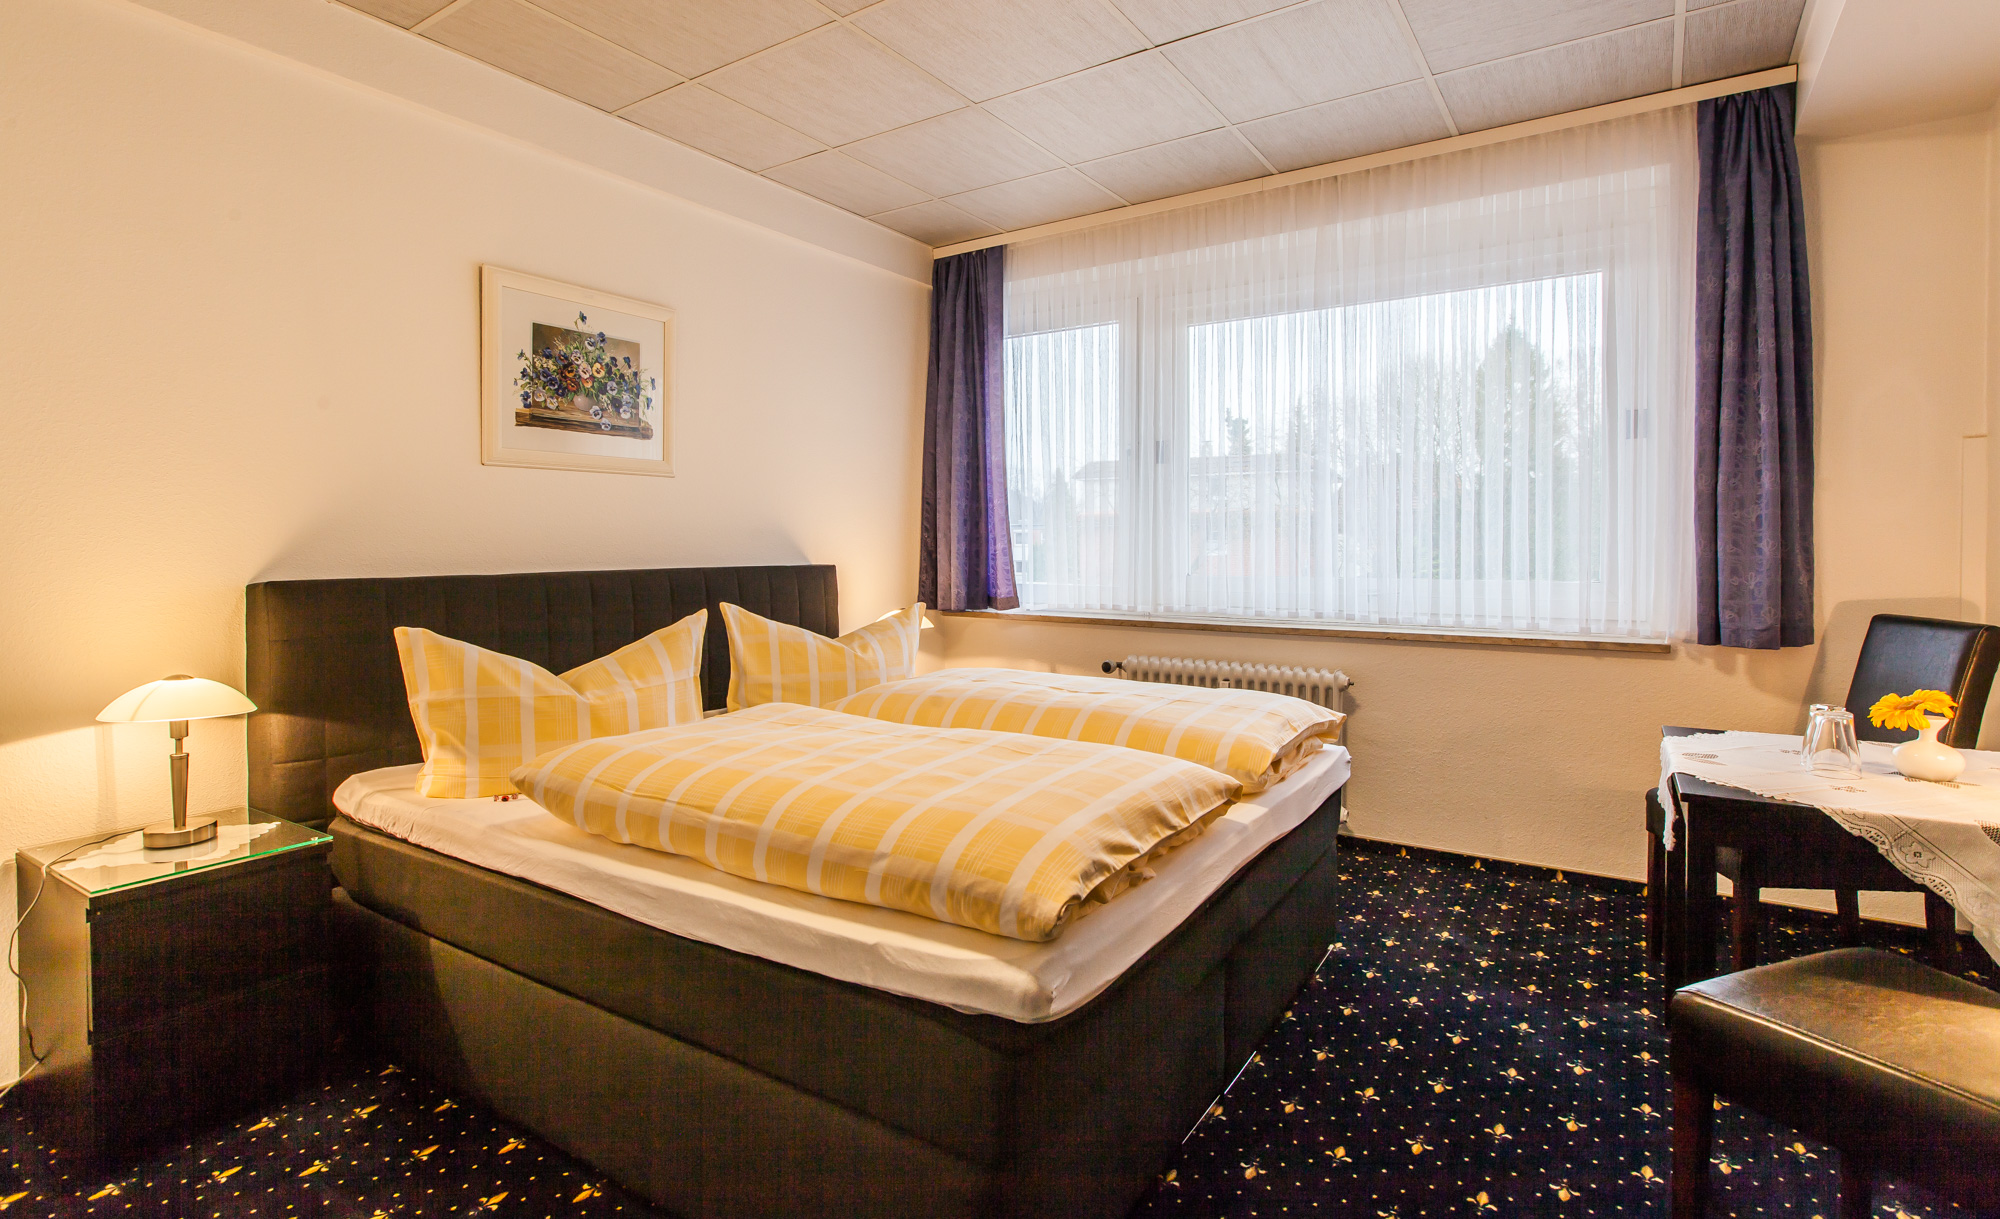 Doppelzimmer im Hotel Quellental in Pinneberg bei Hamburg